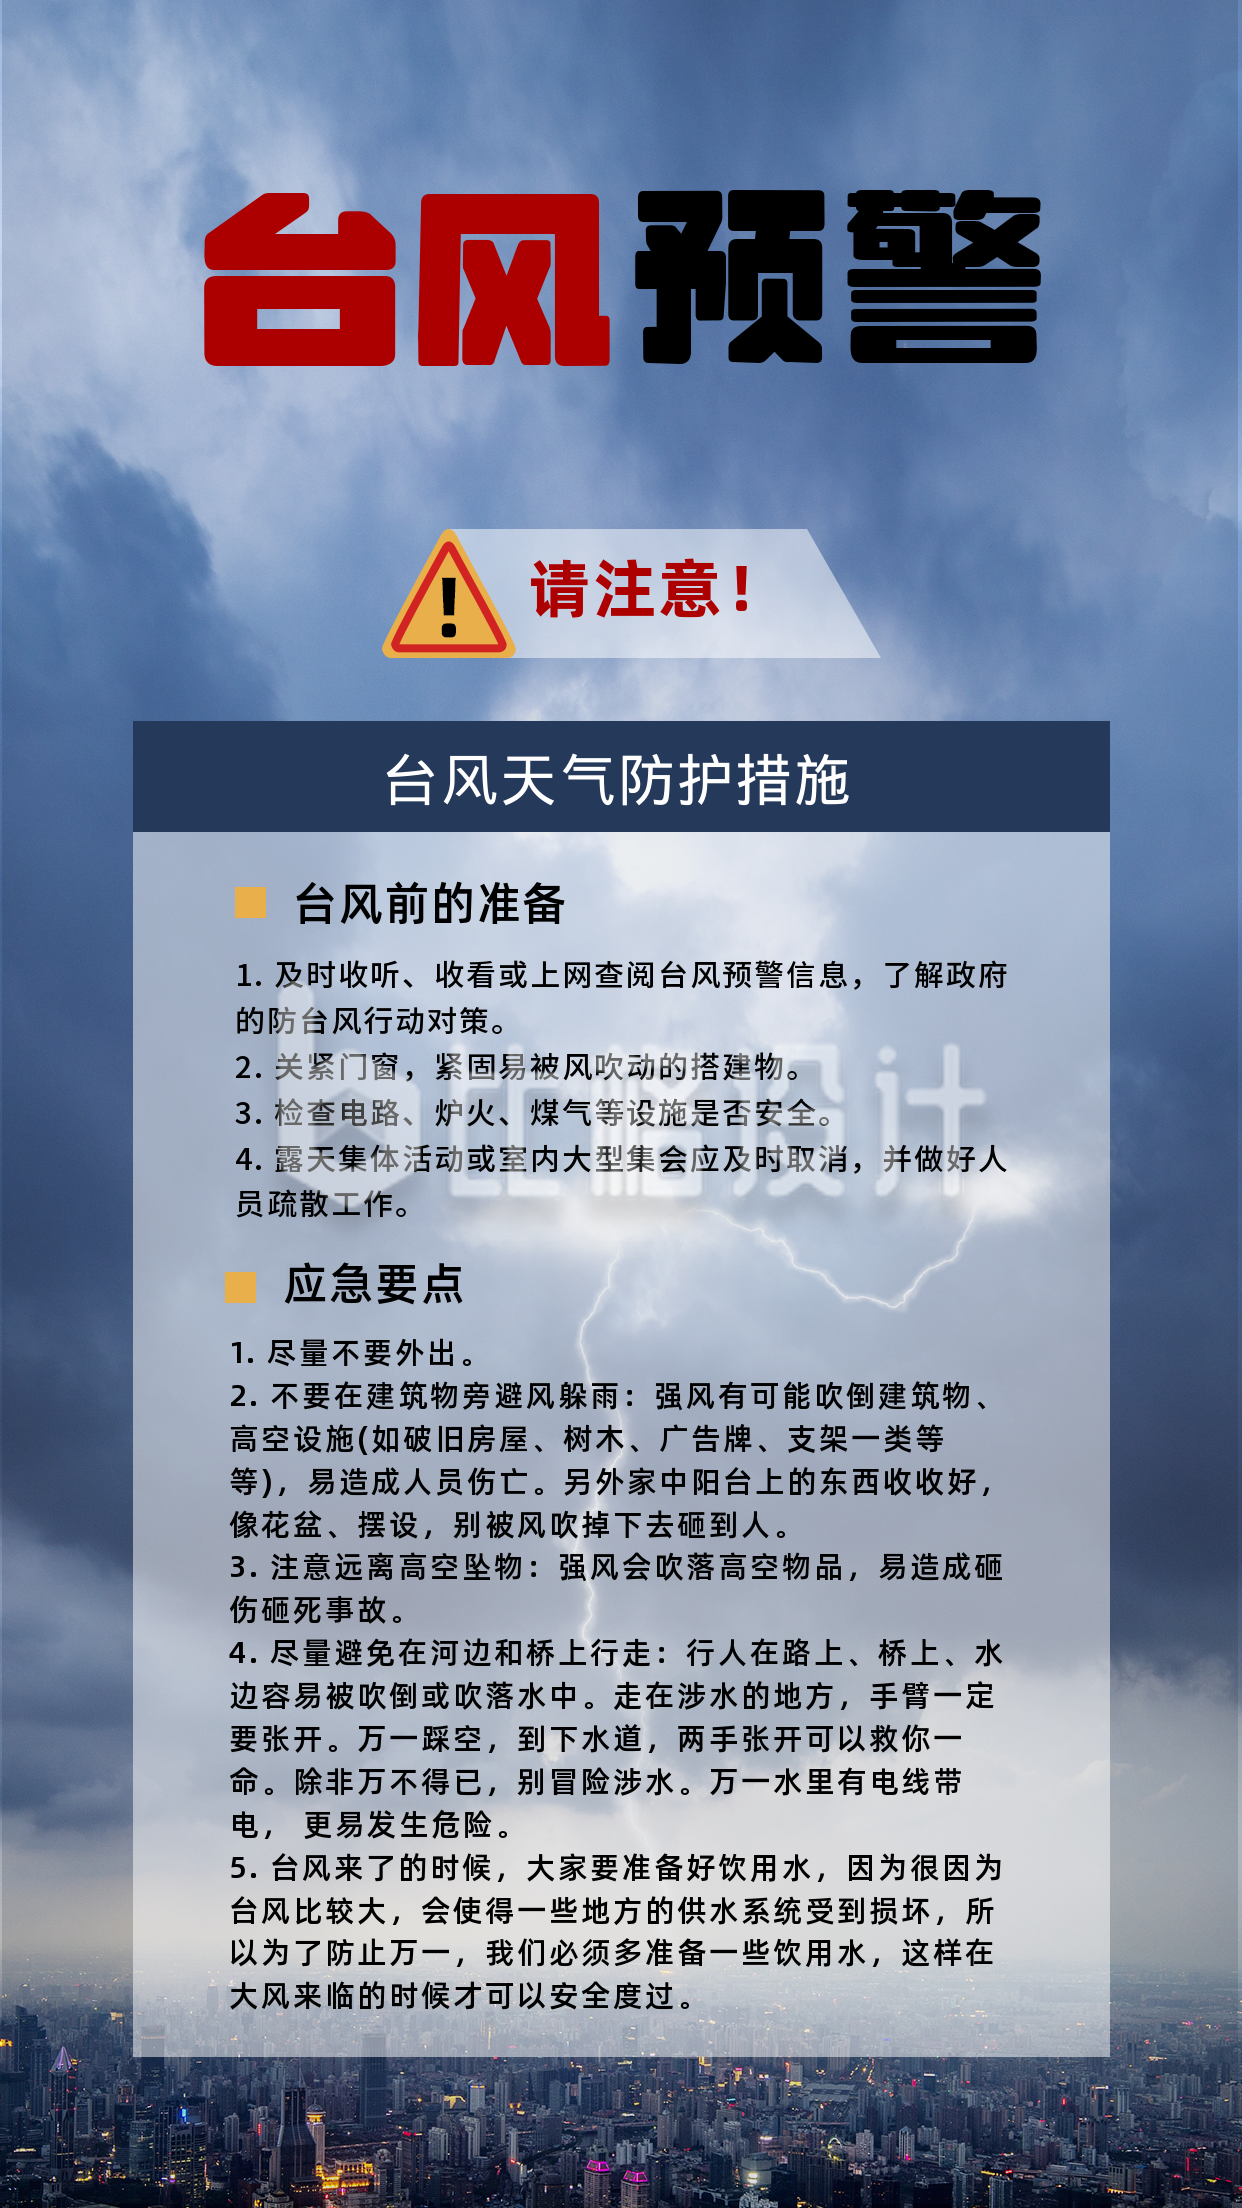 山西自然灾害暴雨天气防护知识科普手机海报